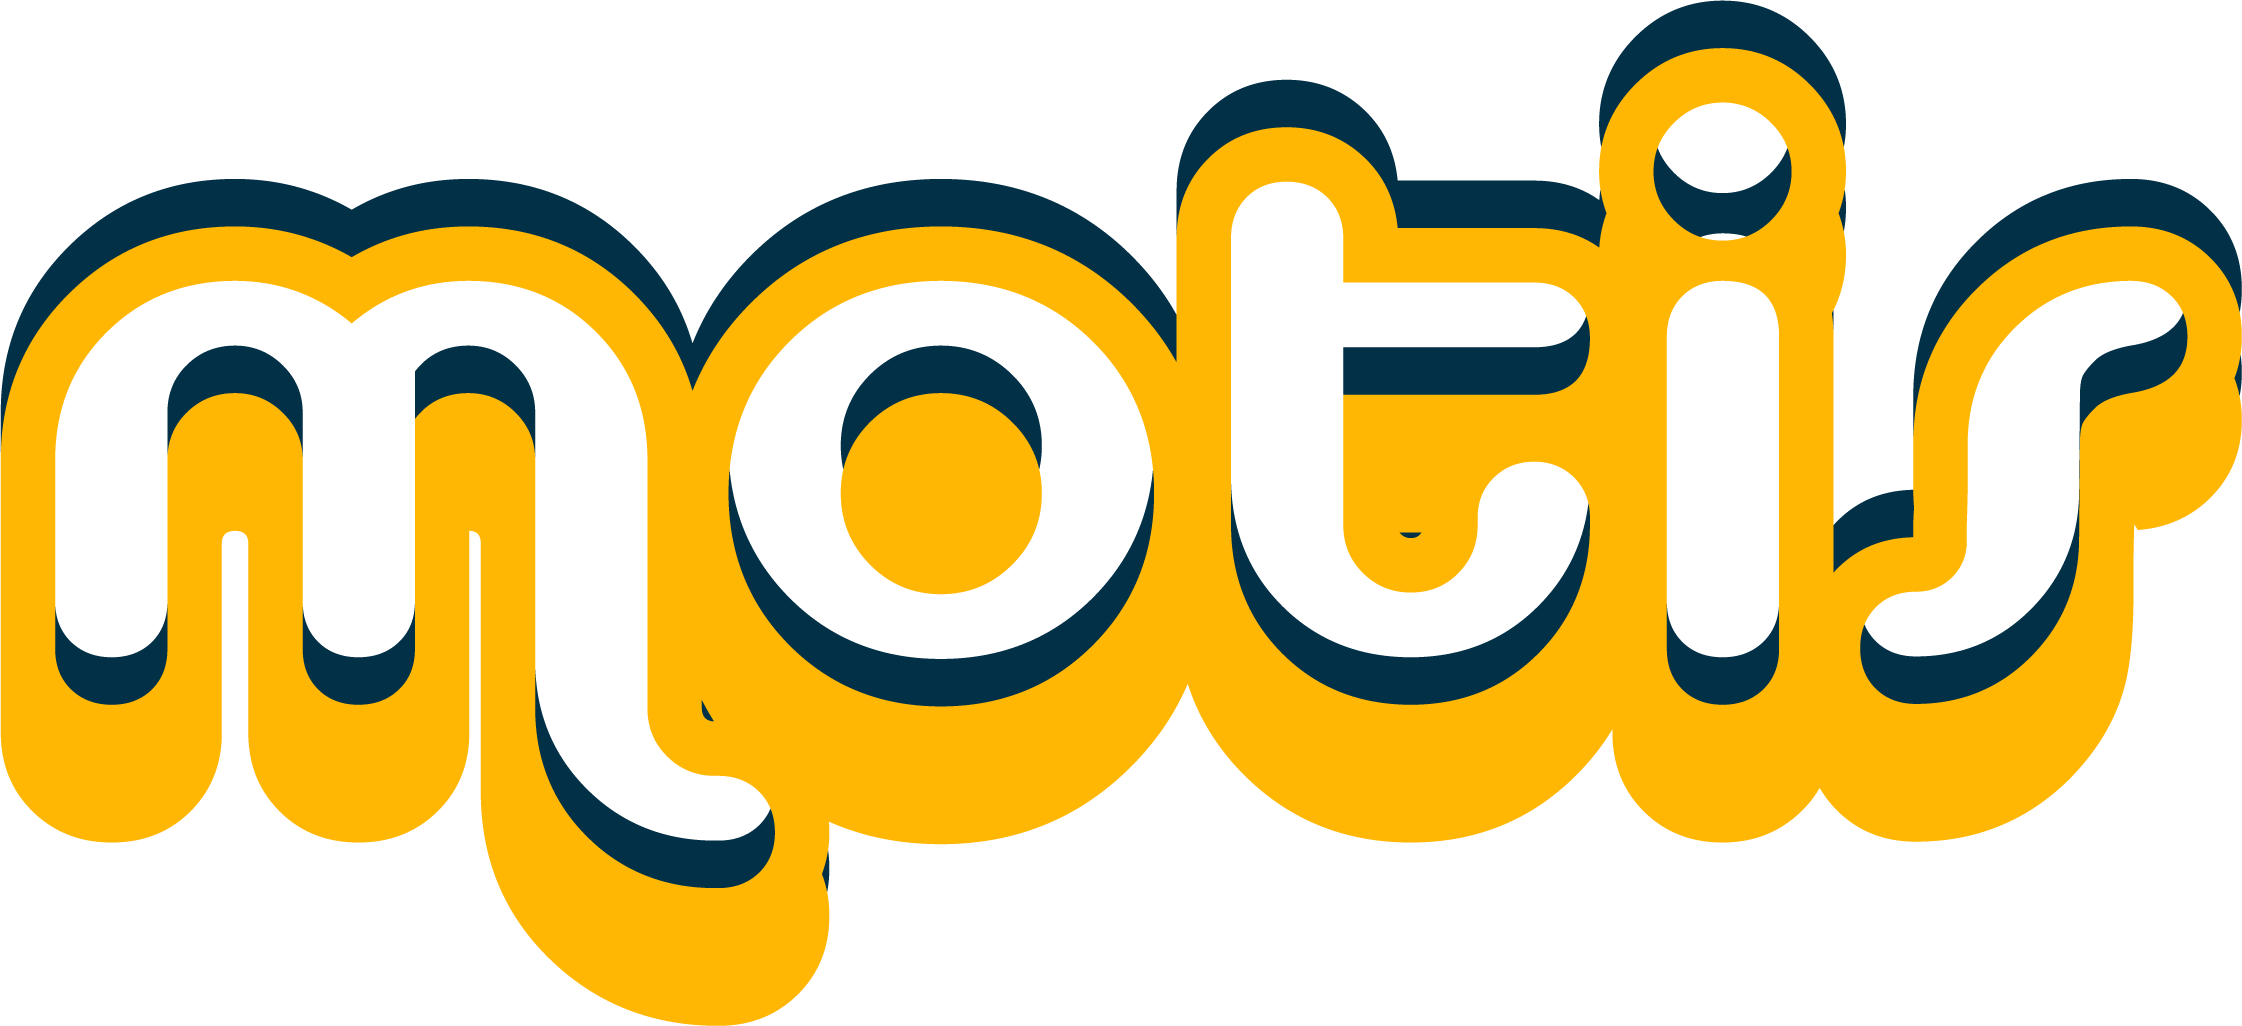 File:Motis logo 2.png